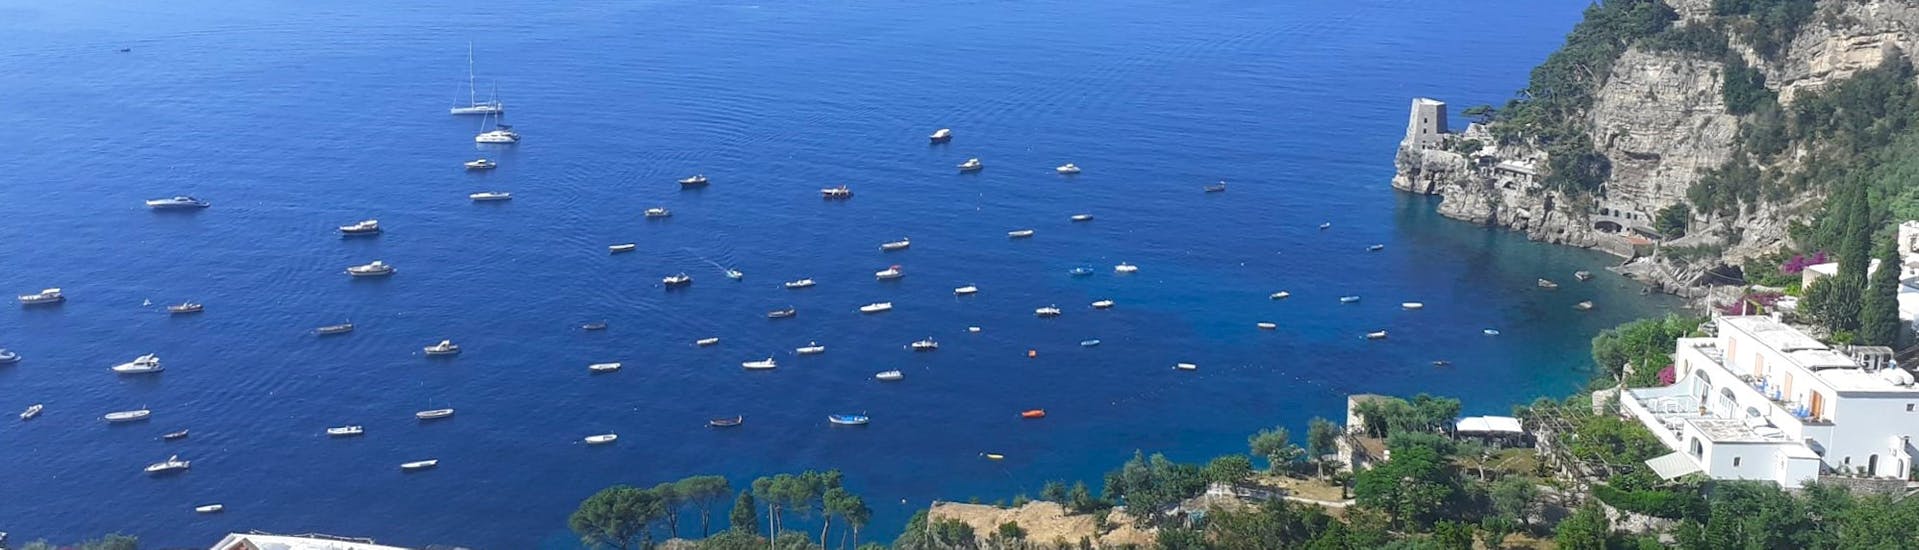 Blick auf die Amalfiküste von oben mit dem Bootsverleih in Positano an der Amalfiküste (bis zu 4 Personen)